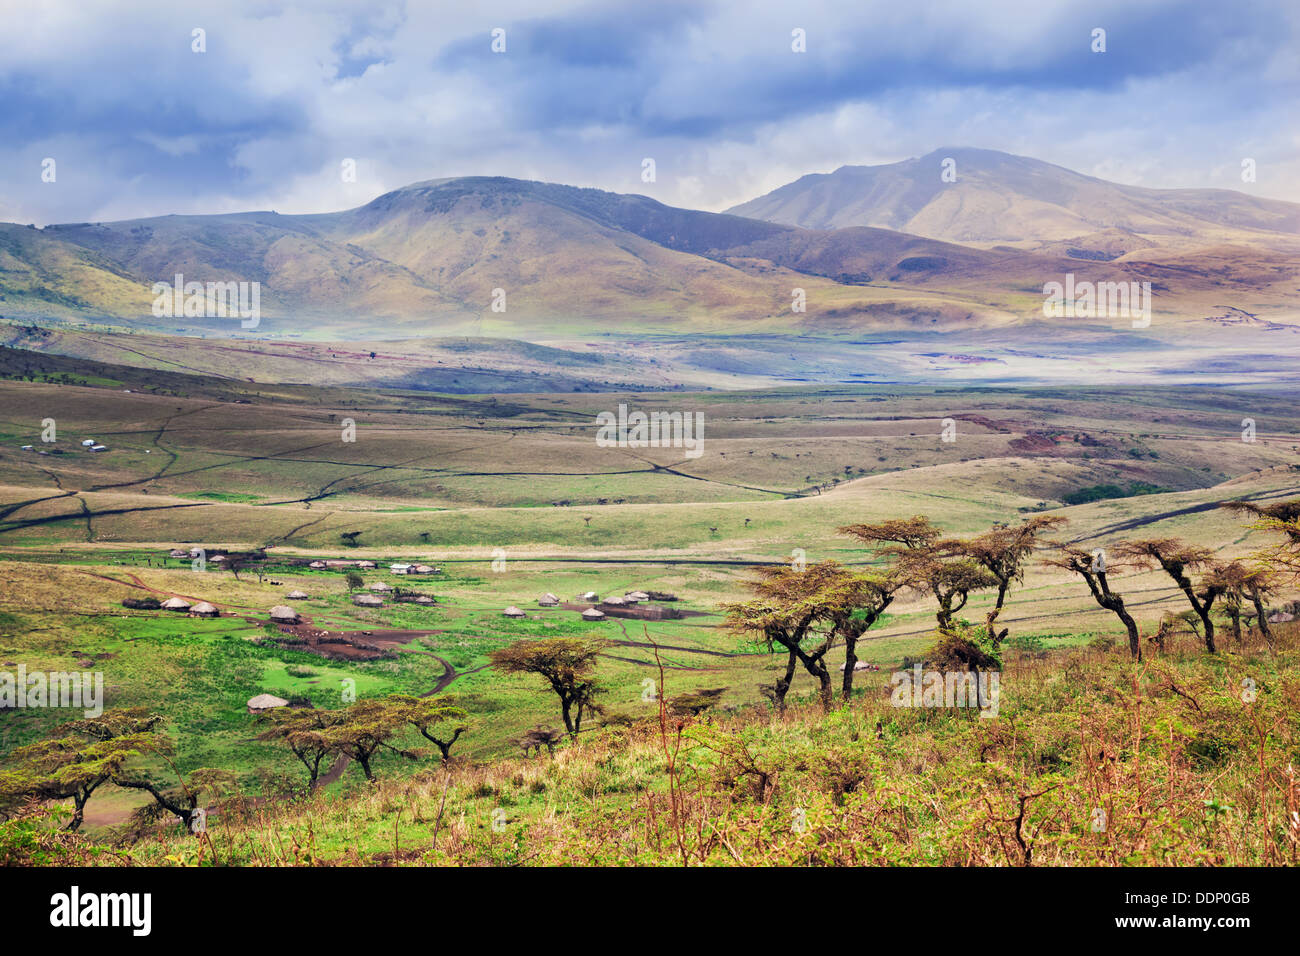 Paysage, paysage de savane en Afrique - Tanzanie, Afrique. Maisons massaïs dans la vallée Banque D'Images